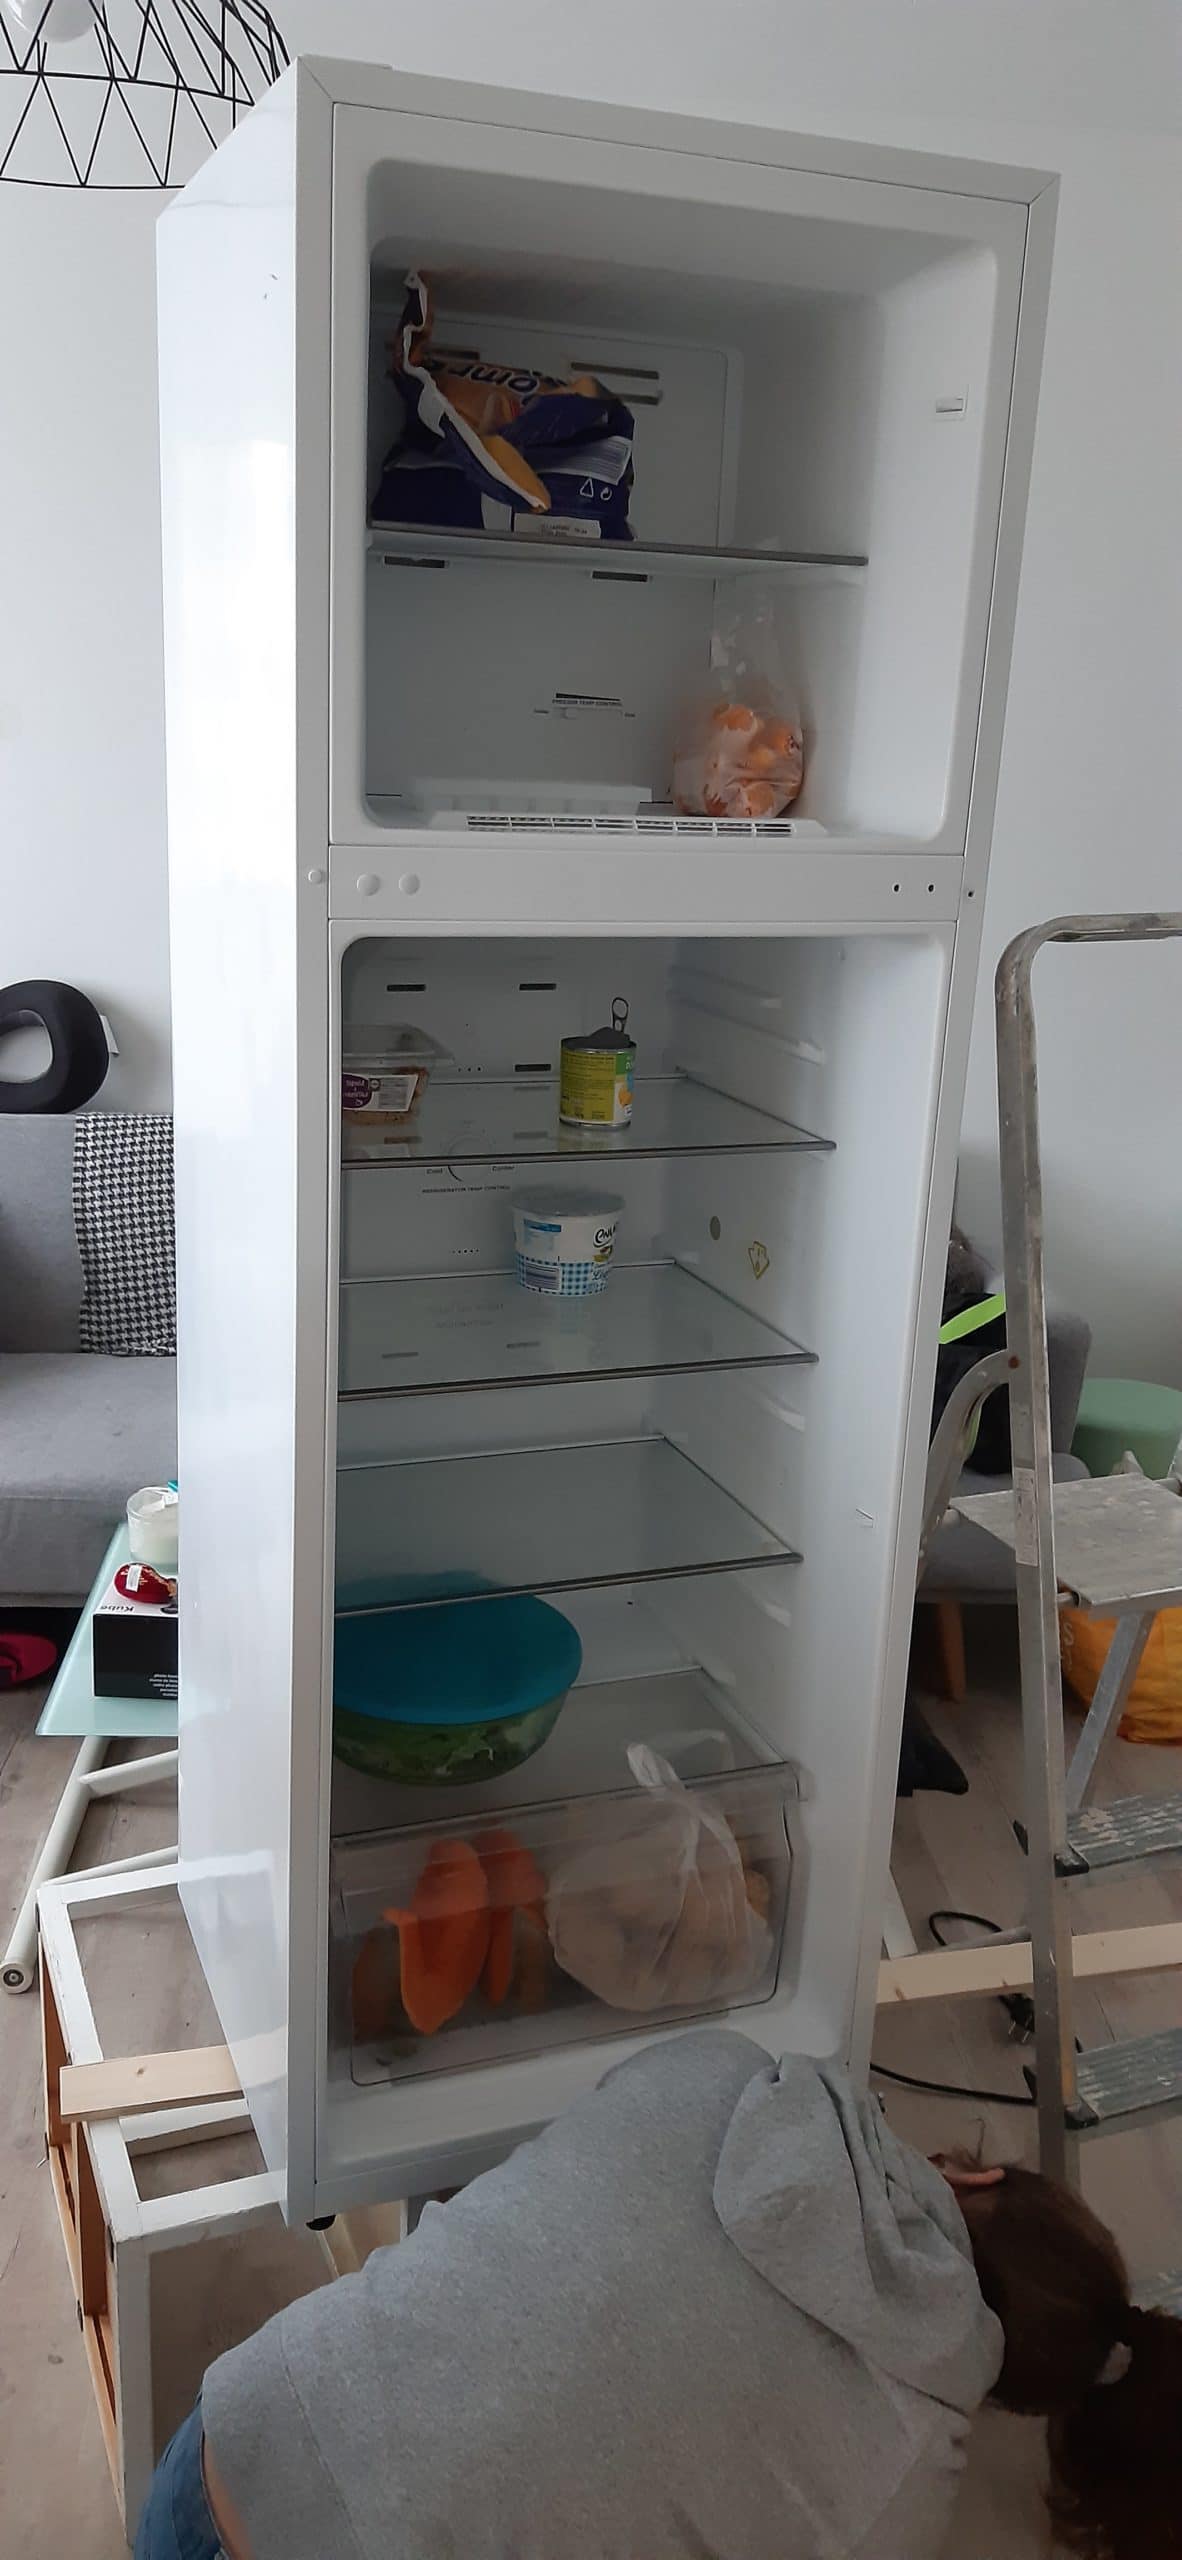 Ameublement : Changement de sens d'ouverture de portes de réfrigérateur à Rillieux la Pape
Pose de menuiseries intérieures et montage de meubles